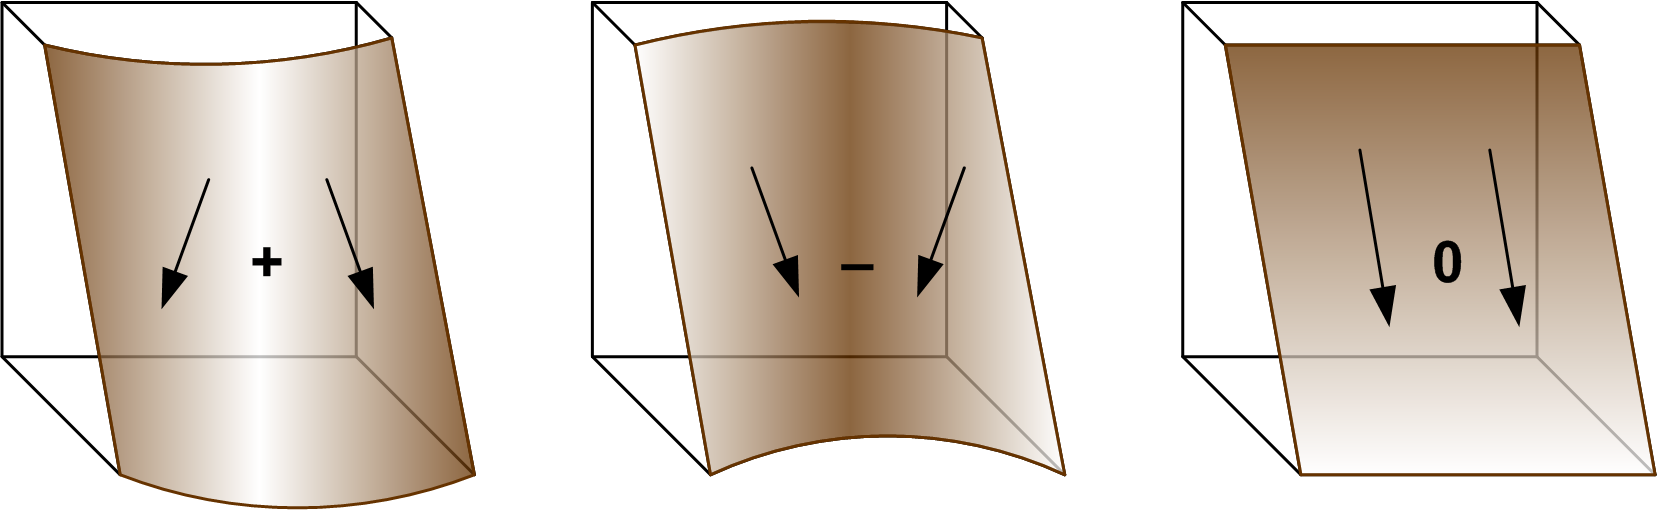 Рис. 9 Горизонтальная кривизна перпендикулярна направлению склона и влияет на конвергентность/ дивергентность поверхностного стока